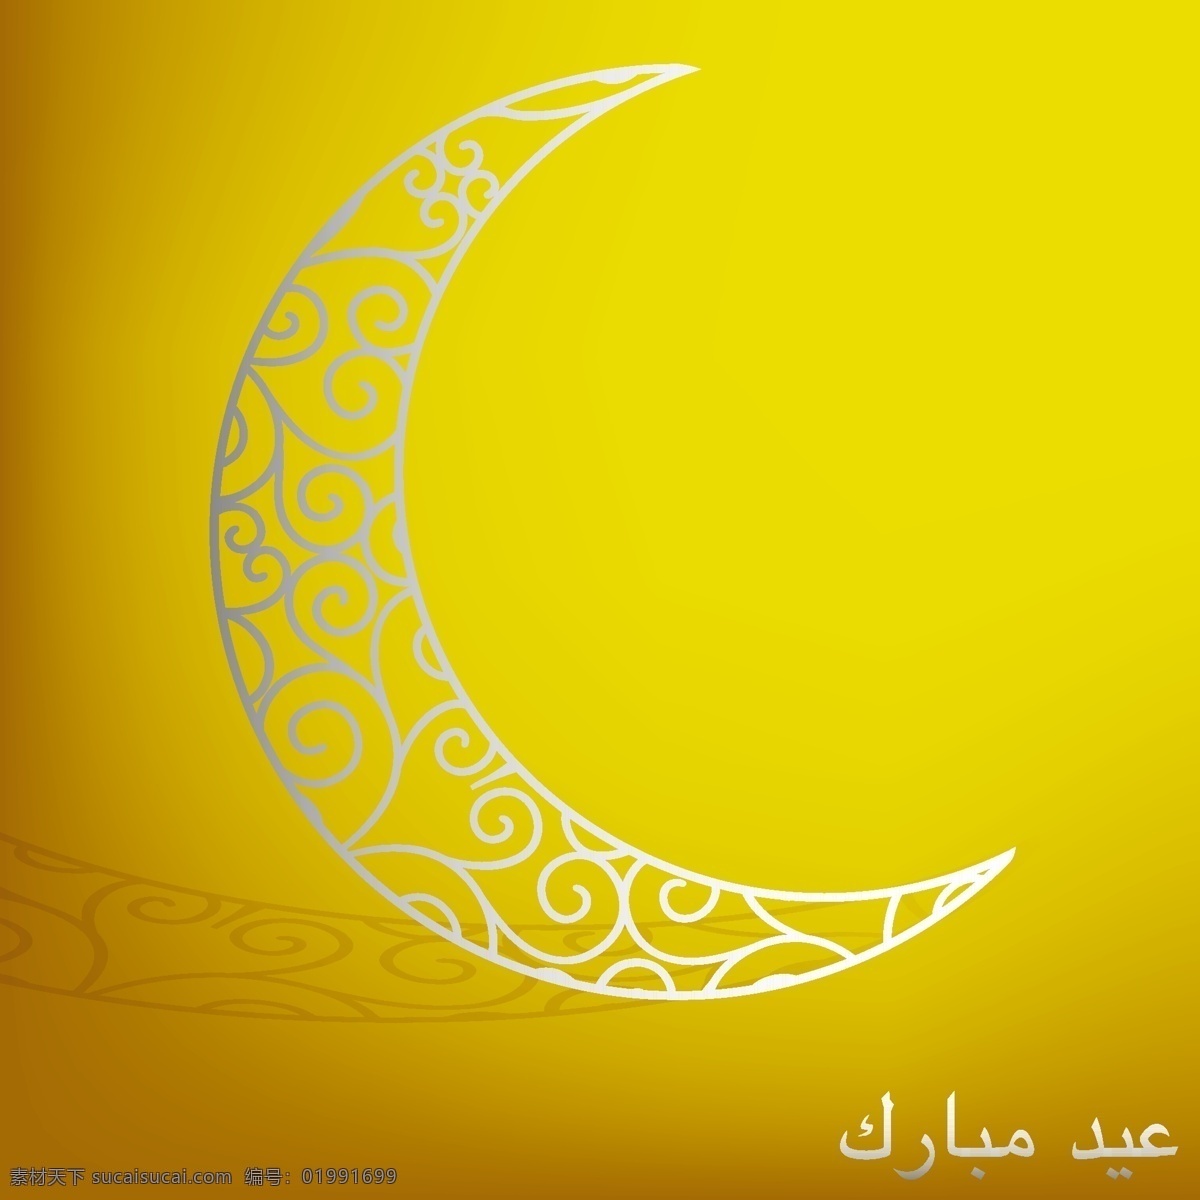 穆巴拉克 神圣 开斋节 花丝 月亮 卡 矢量 格式 黄色